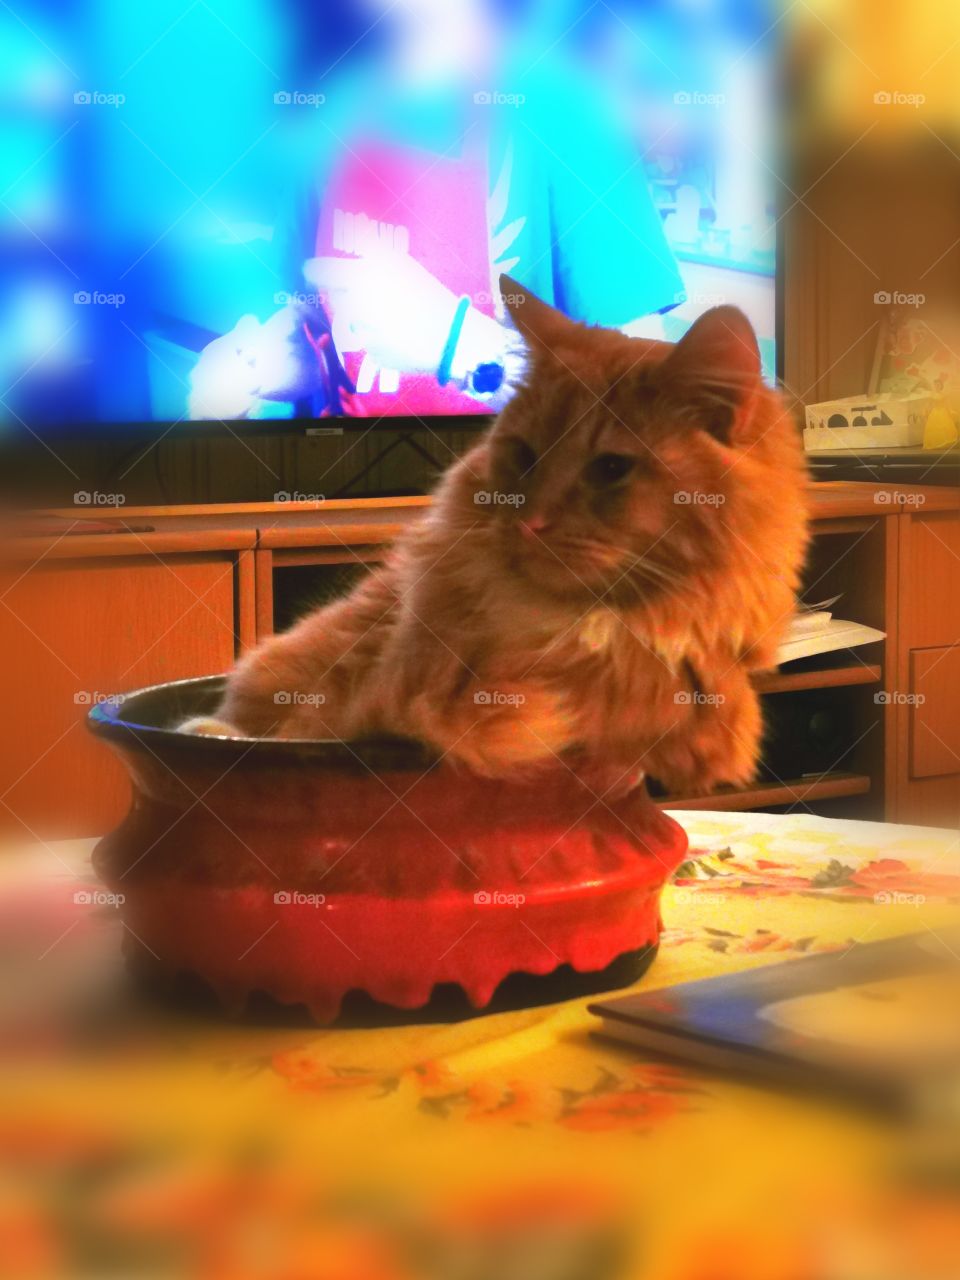 Cat in fruitbowl